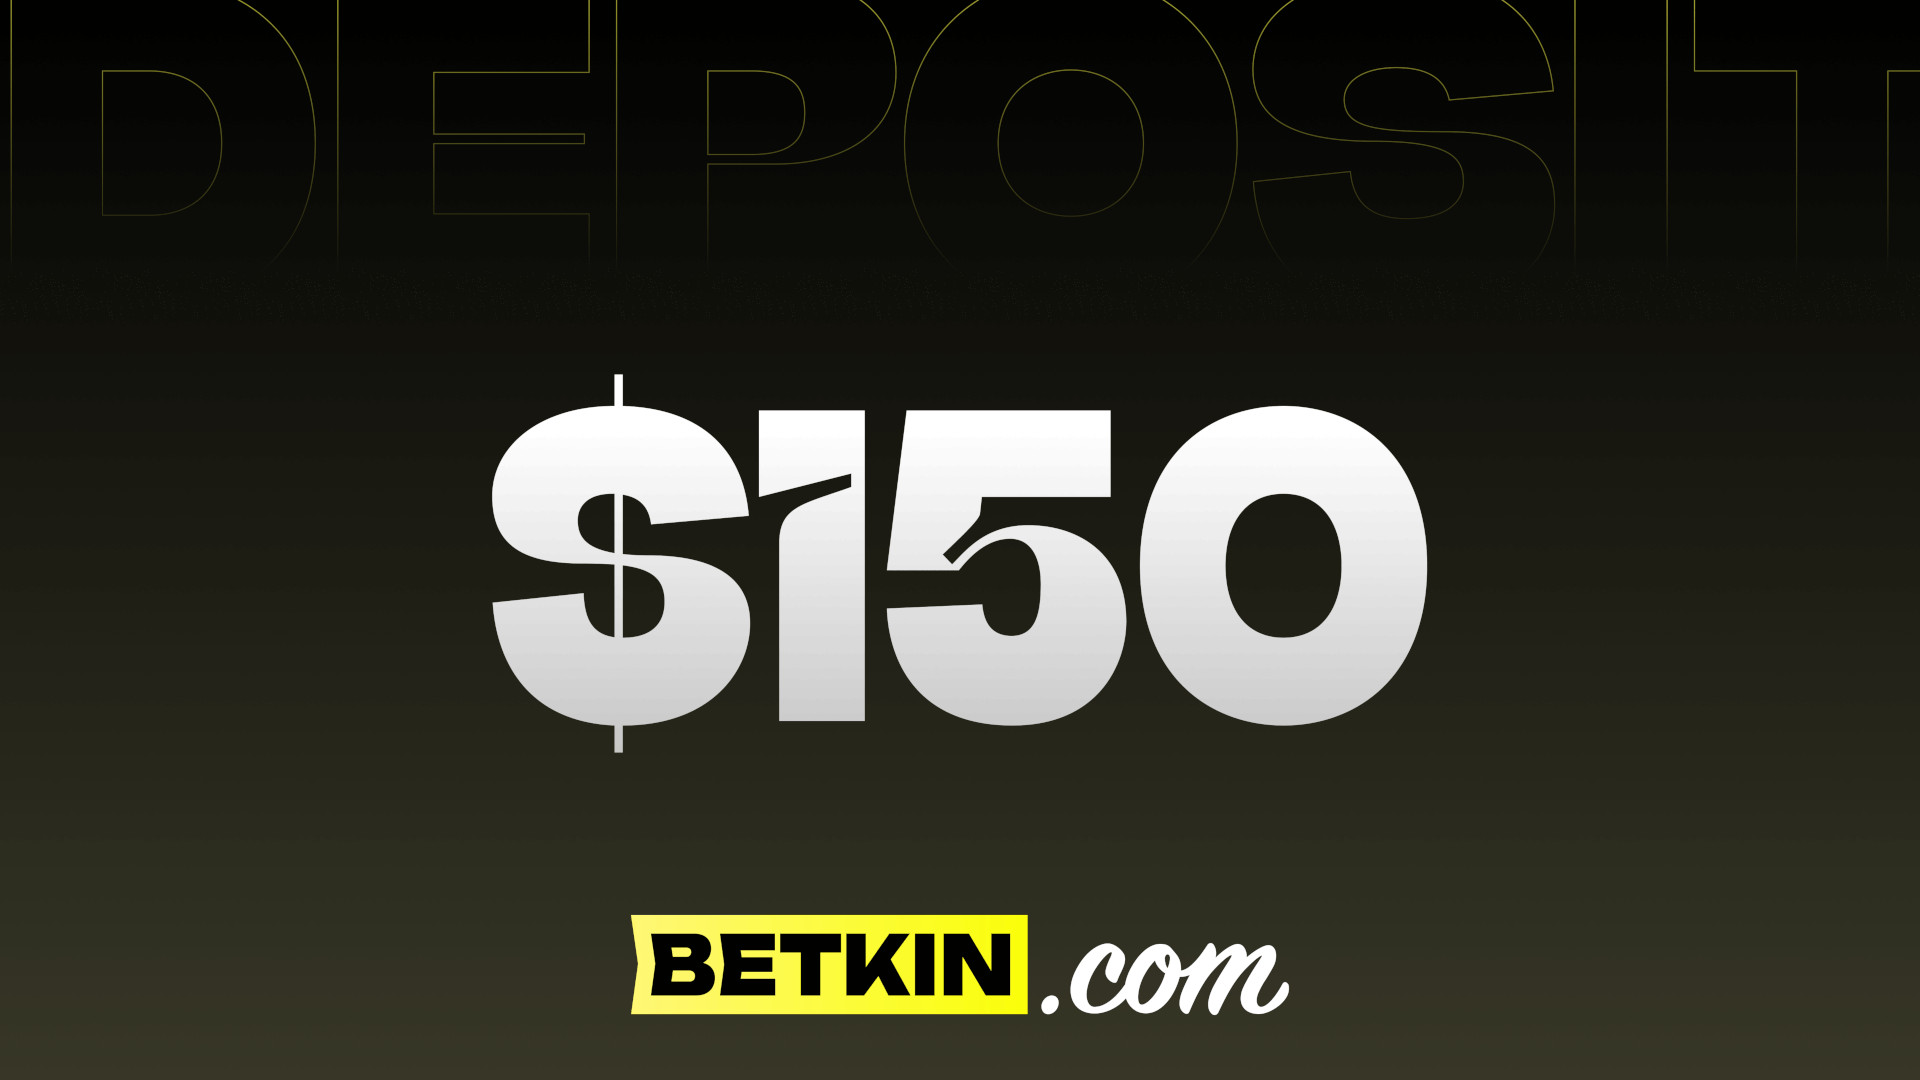 Betkin $150 Coupon, 166.96 usd